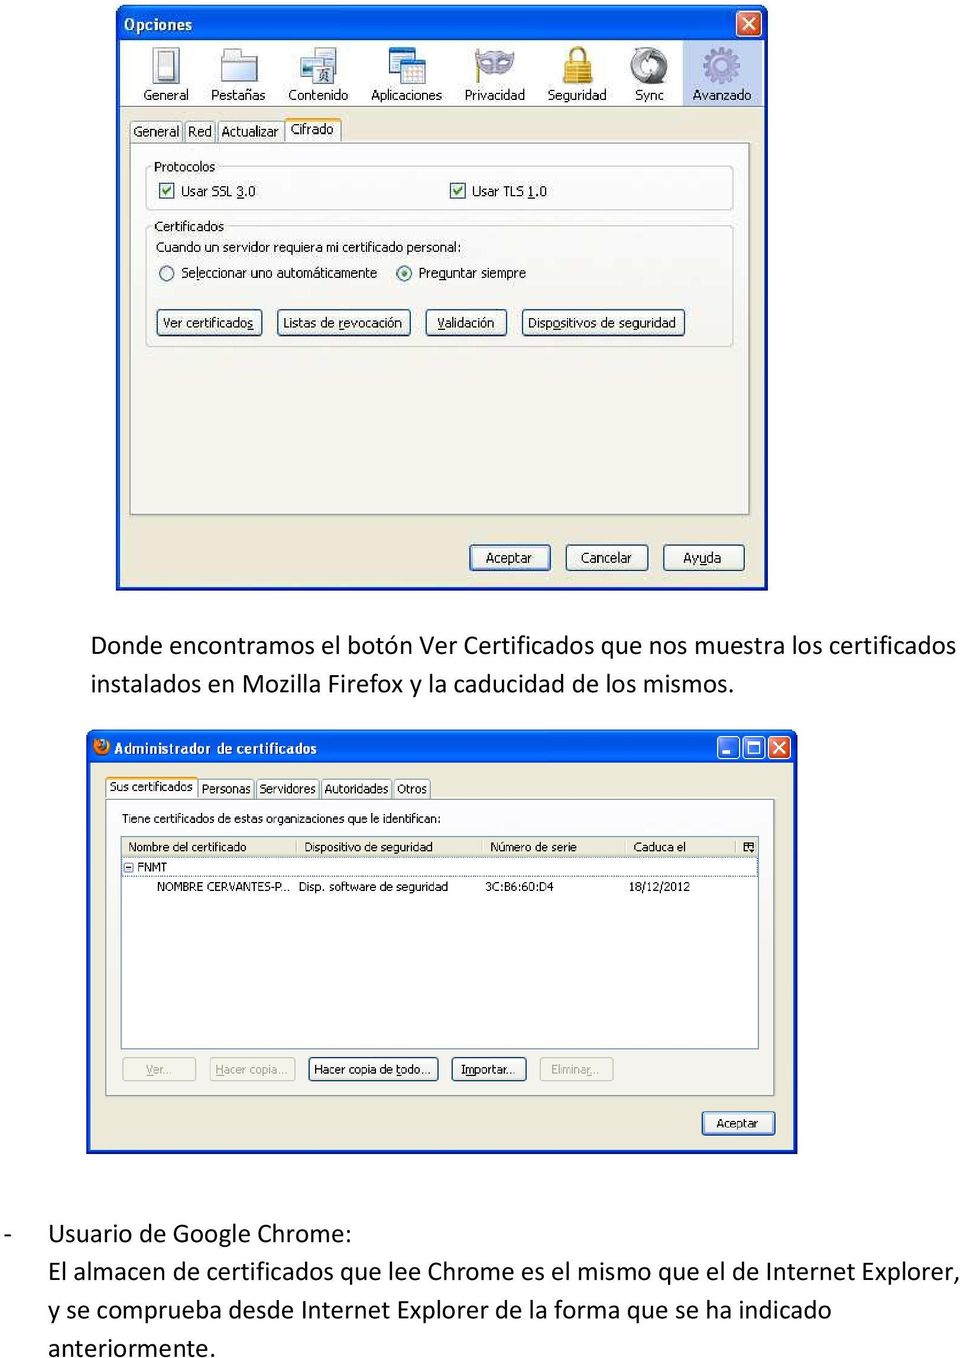 - Usuario de Google Chrome: El almacen de certificados que lee Chrome es el mismo